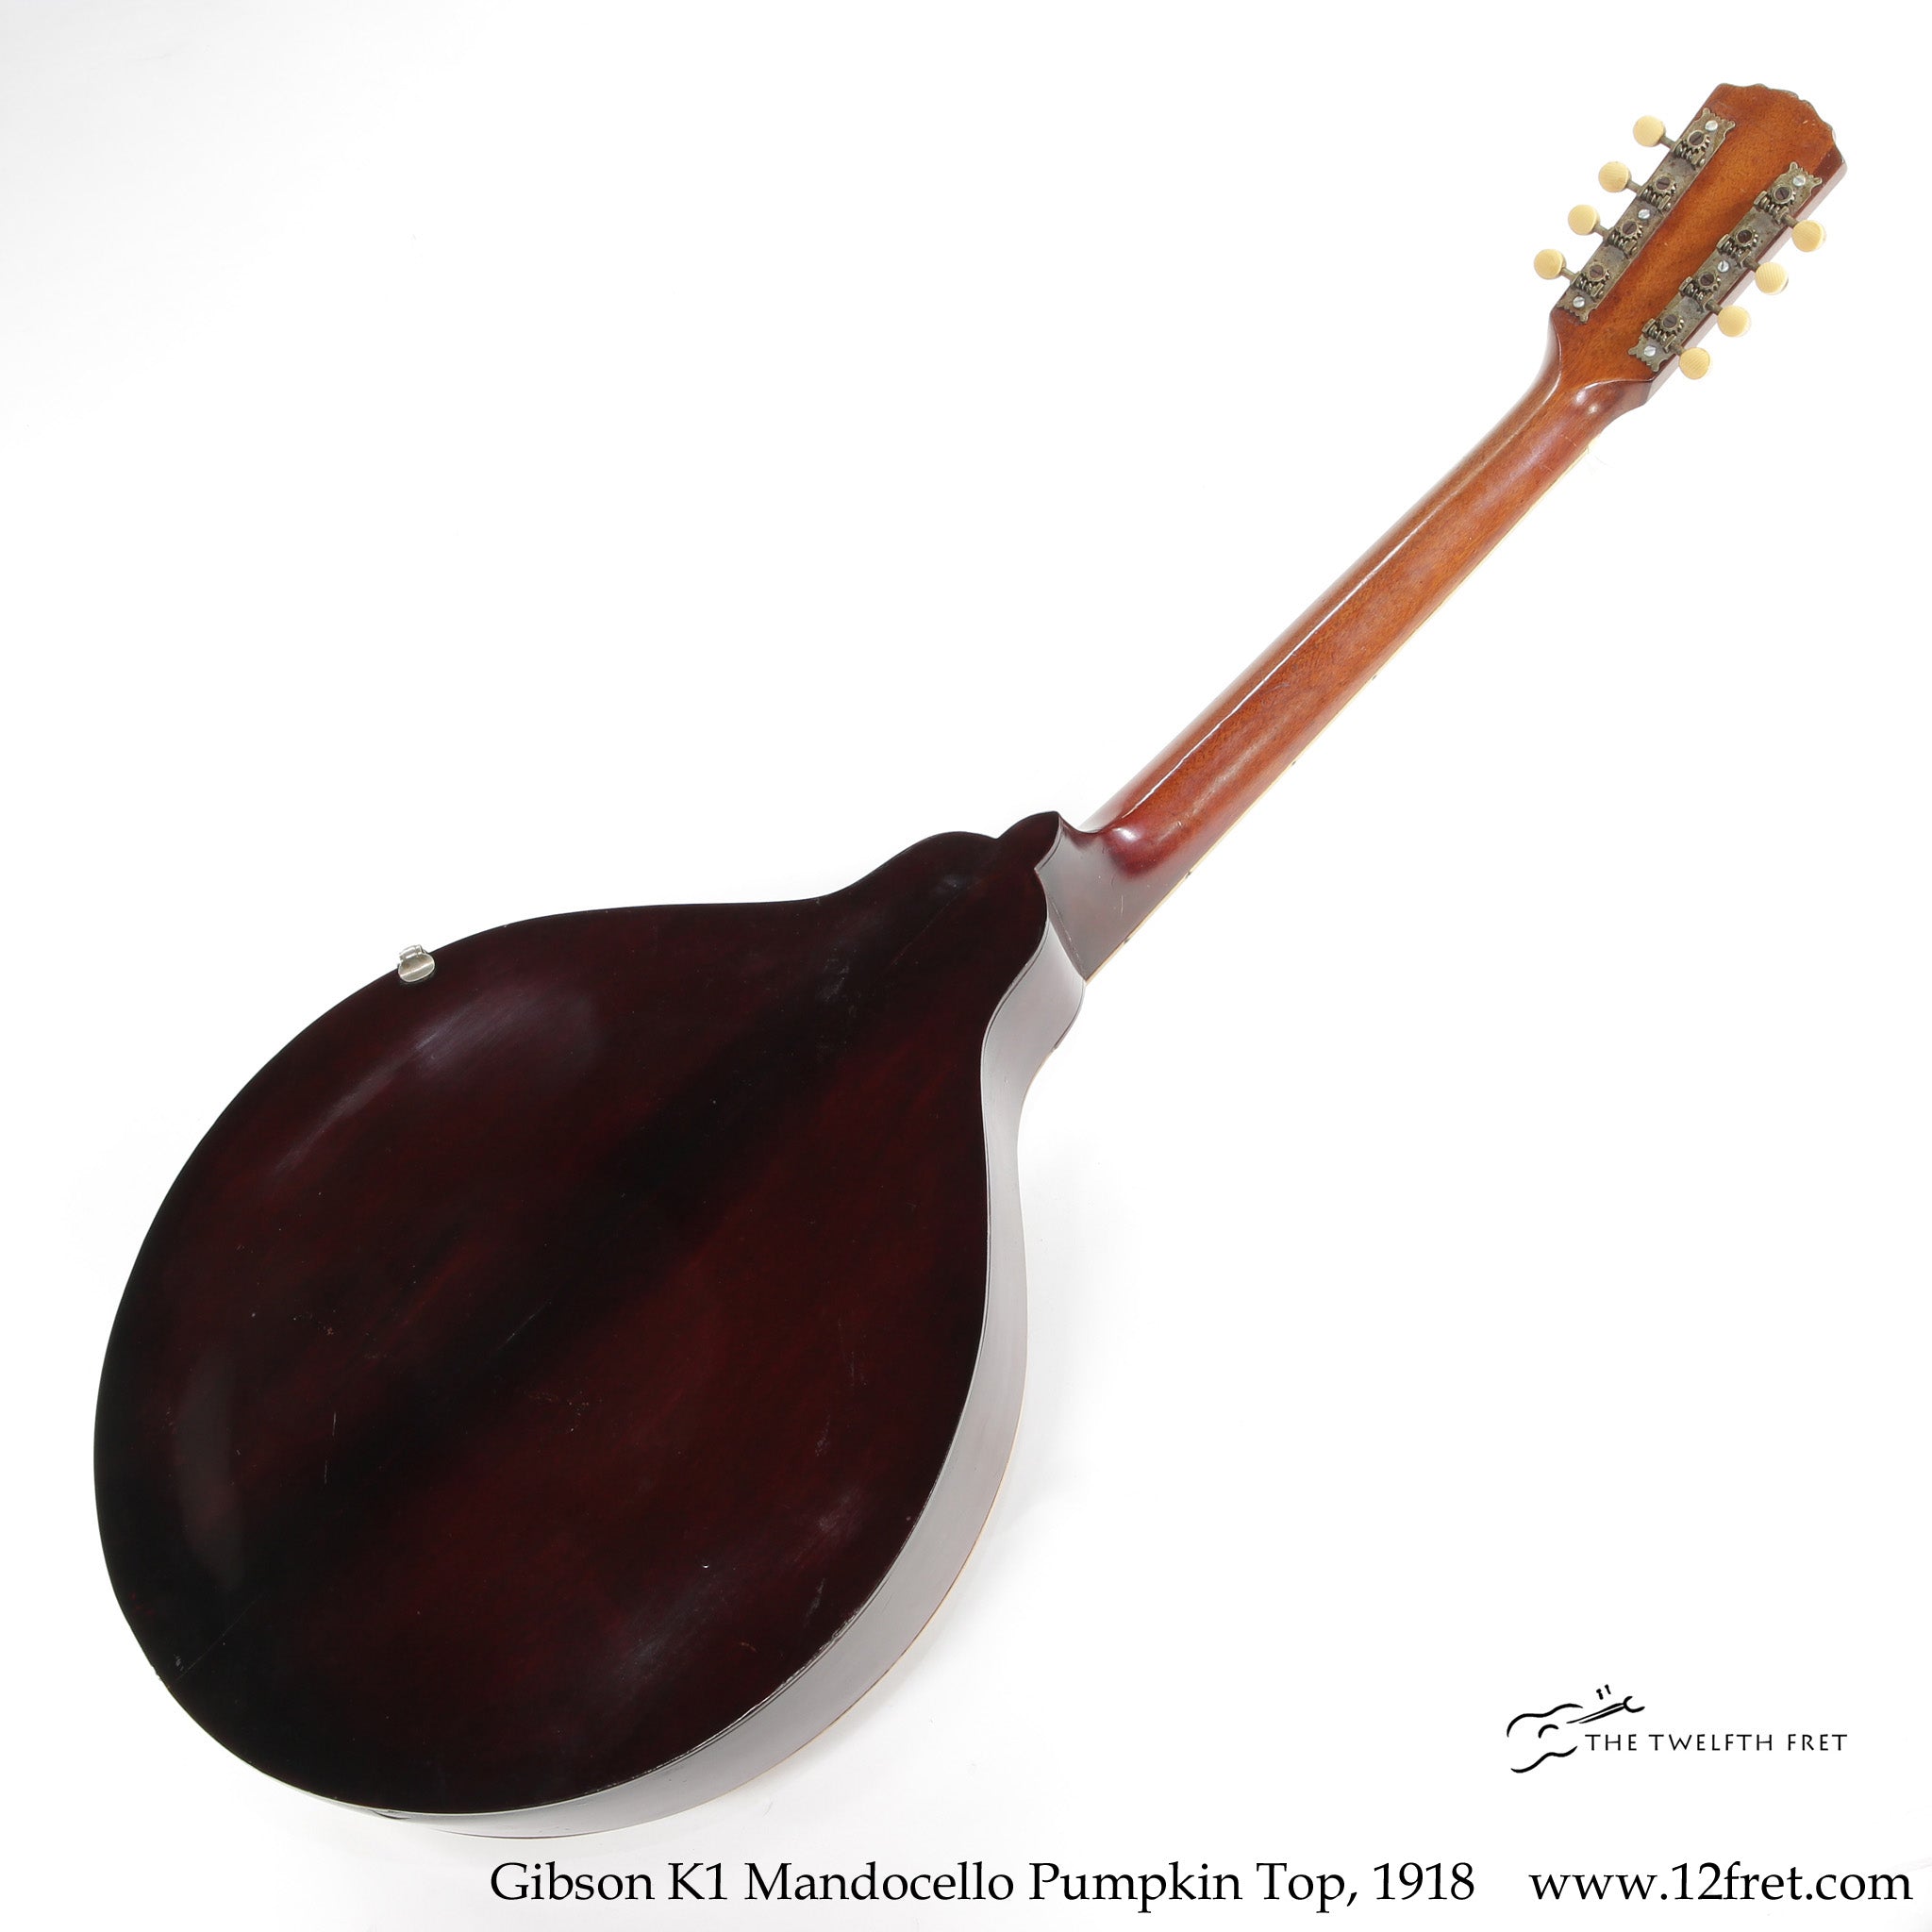 Gibson K1 Mandocello Pumpkin Top, 1918